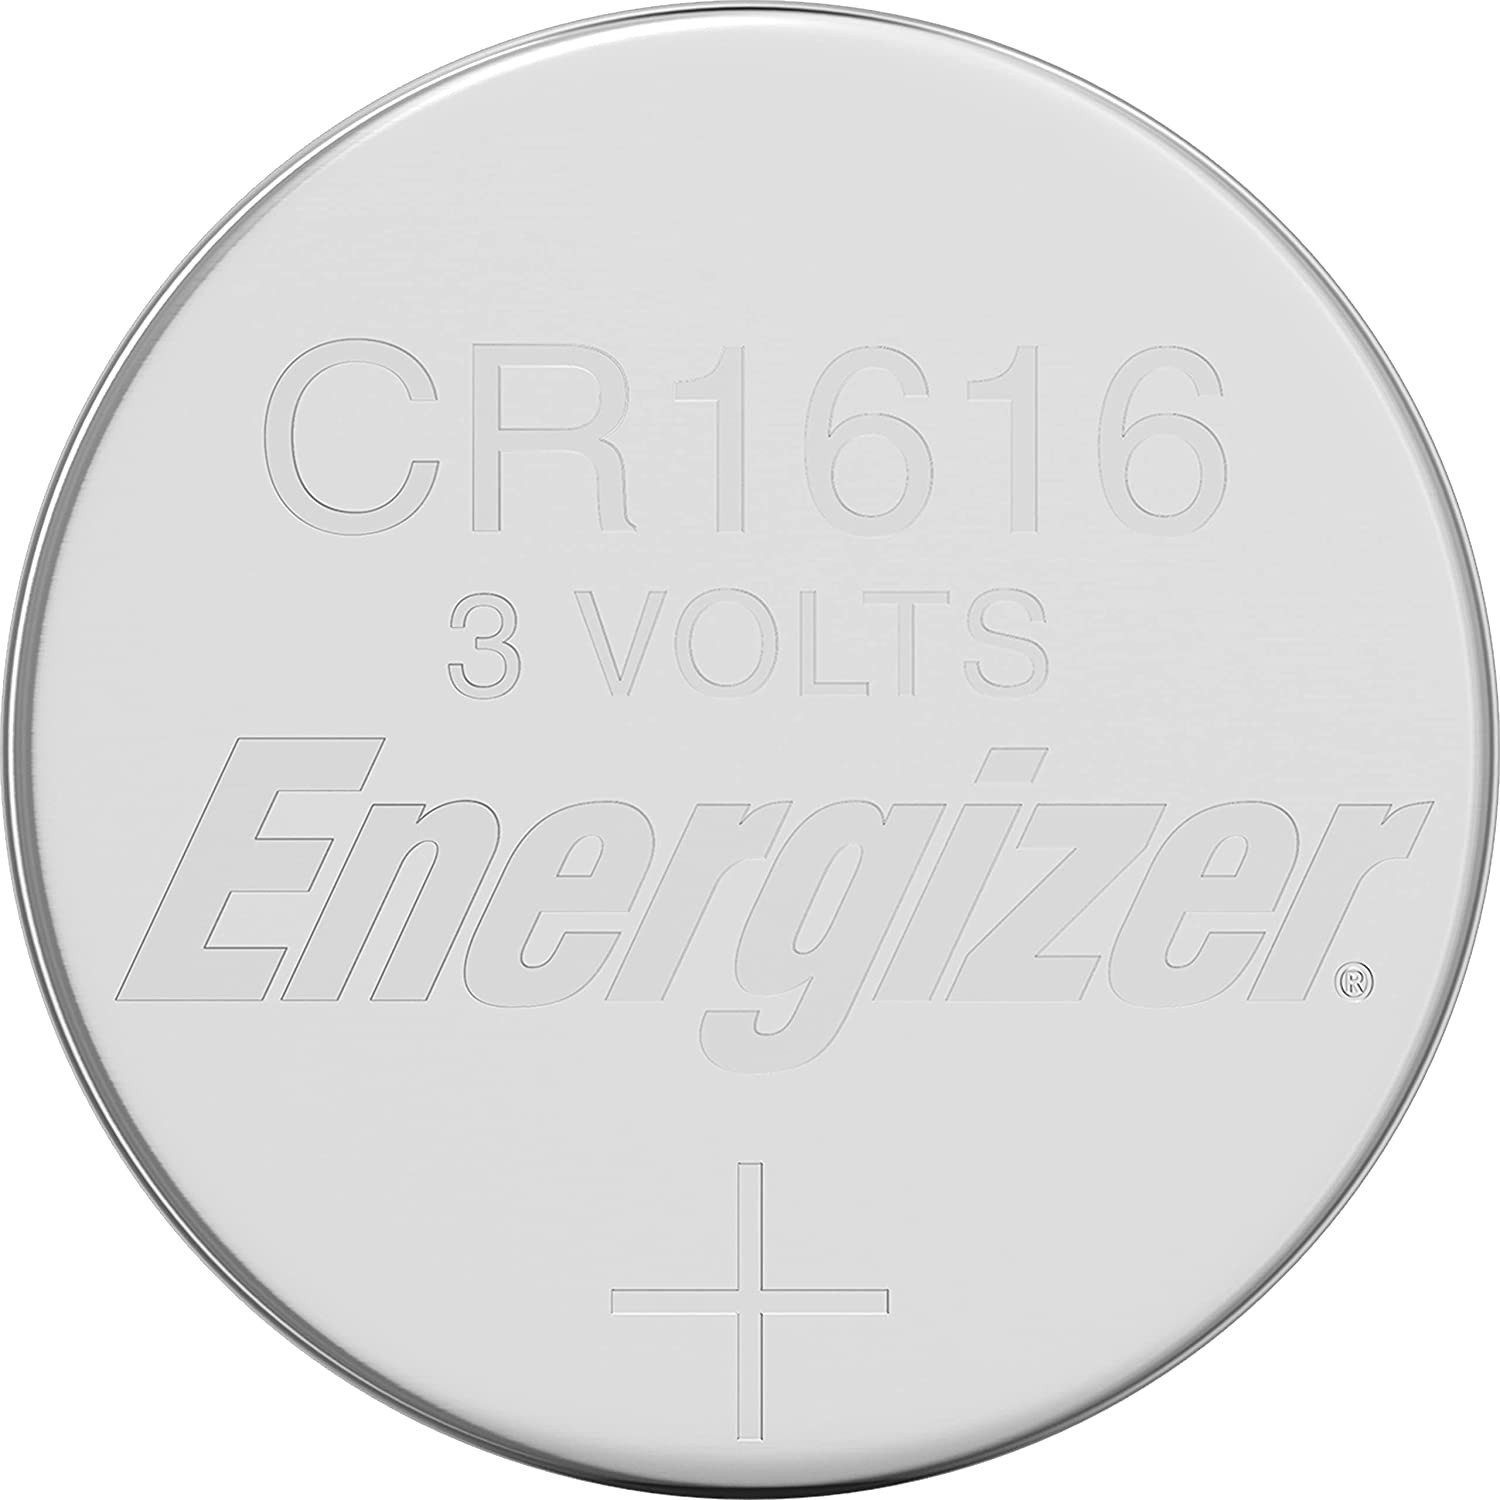 Mejores ofertas e historial de precios de Energizer CR1616 Lithium Coin  Battery en